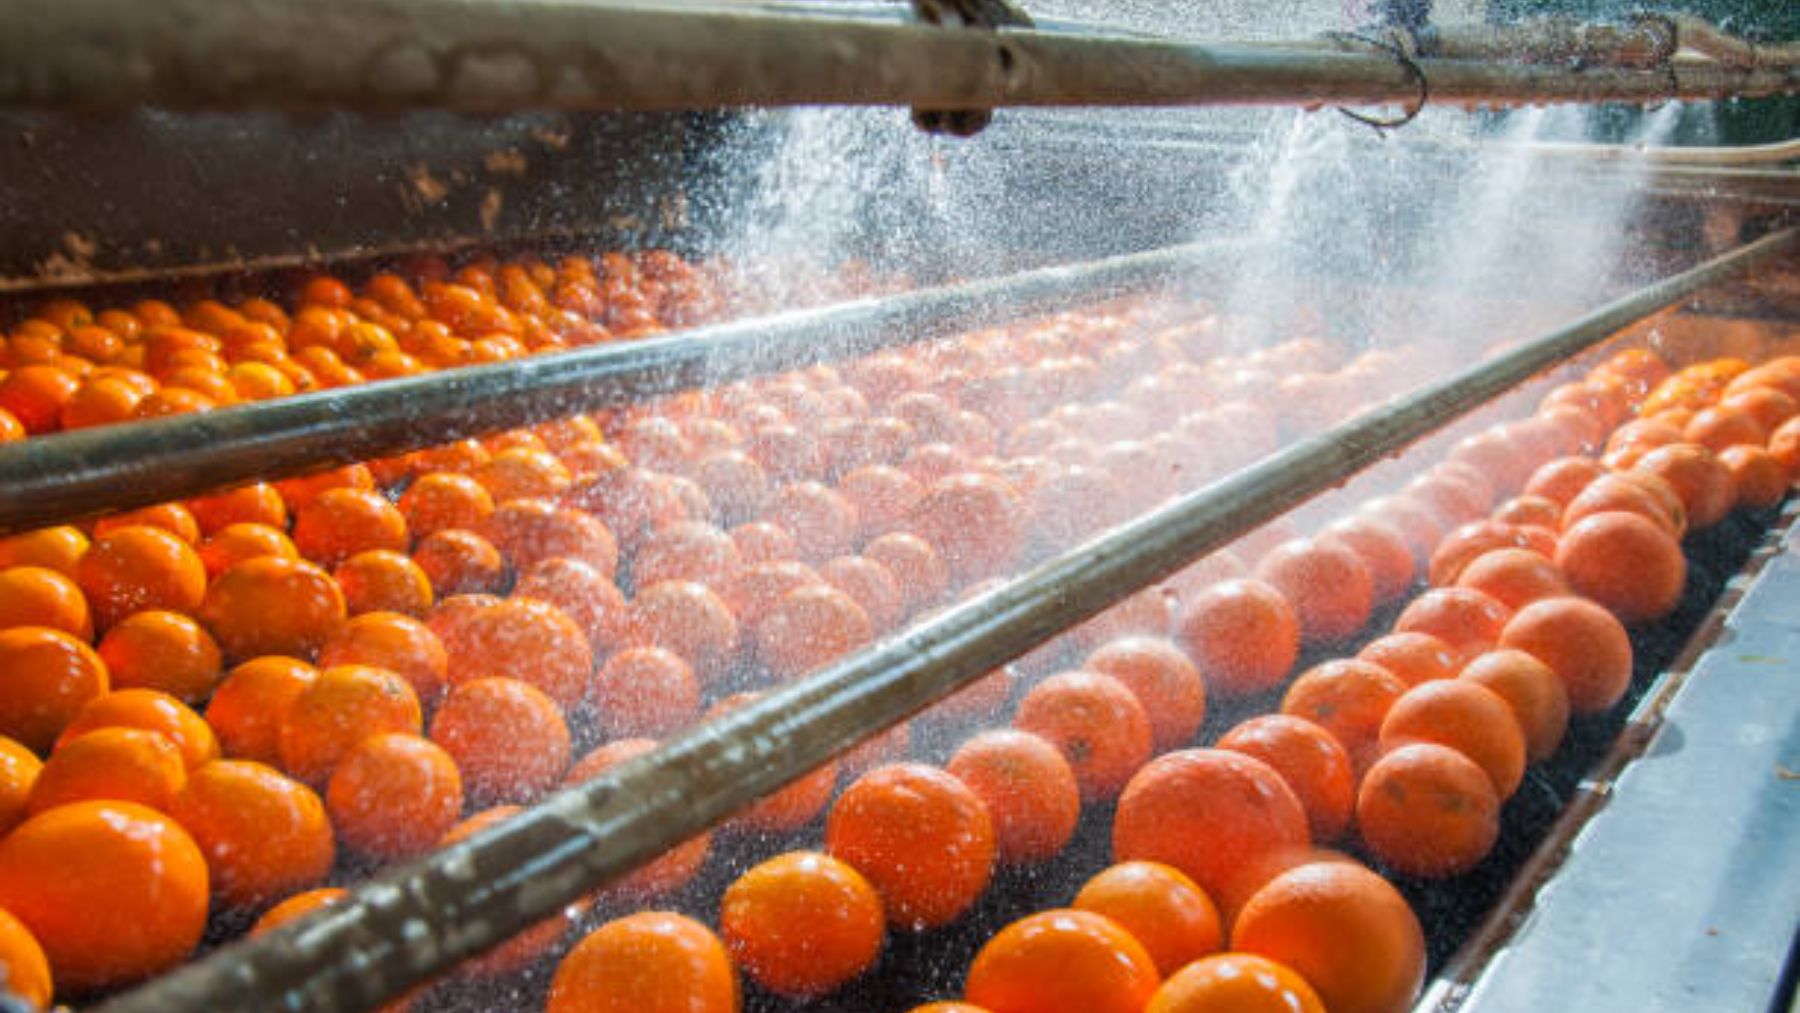 Proceso de lavado de naranjas.